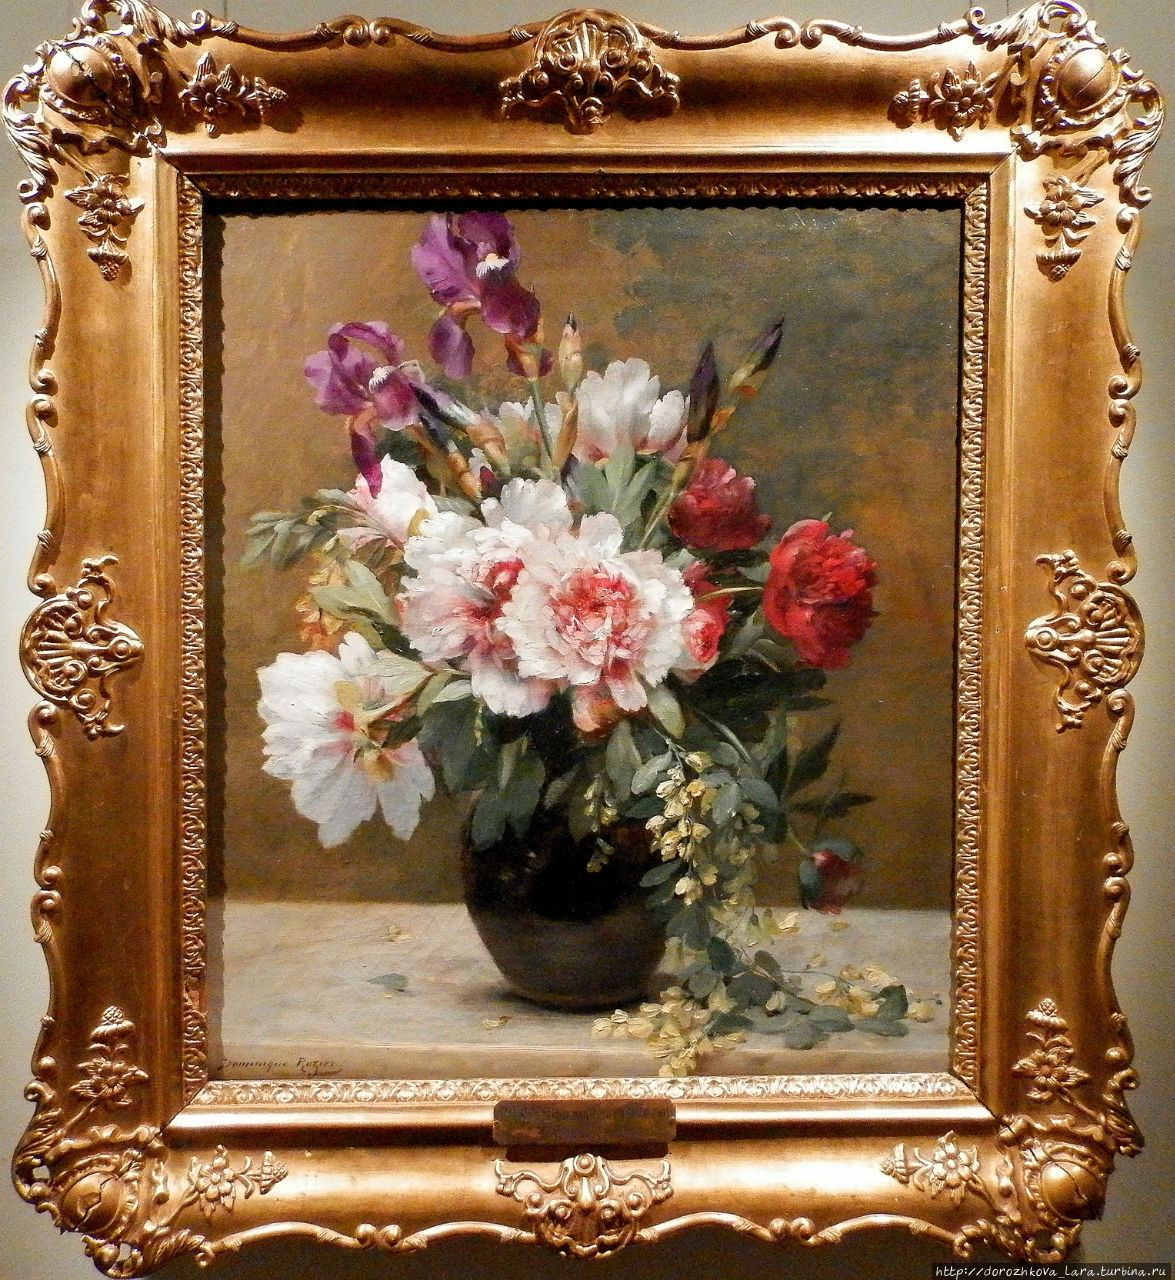 Розье, Доминик Юбер (1840-1901) Цветы Нижний Новгород, Россия